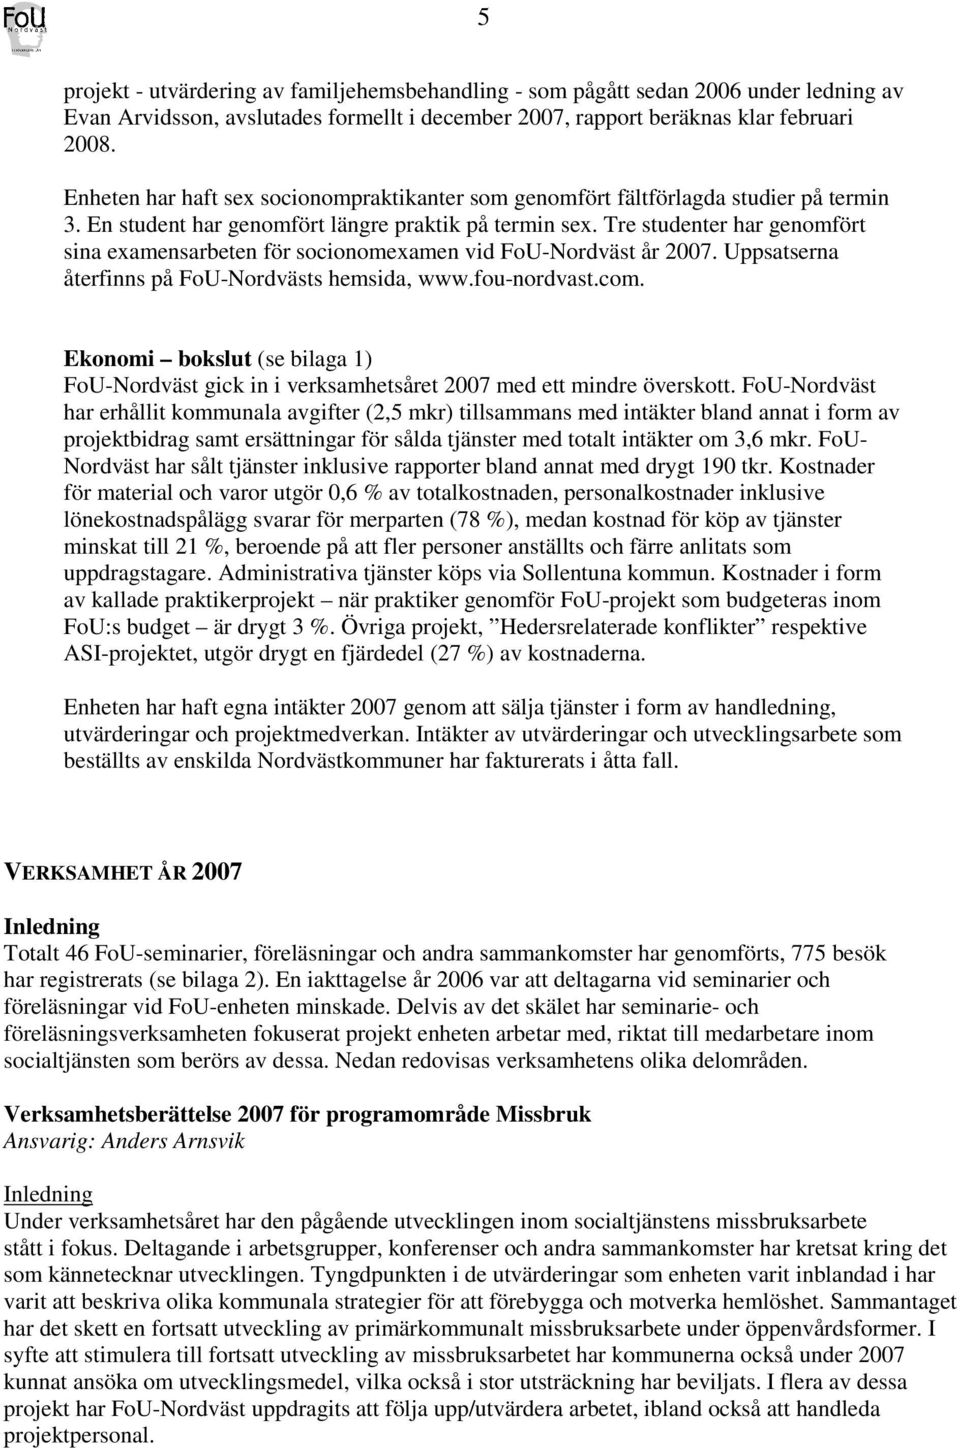 Tre studenter har genomfört sina examensarbeten för socionomexamen vid FoU-Nordväst år 2007. Uppsatserna återfinns på FoU-Nordvästs hemsida, www.fou-nordvast.com.